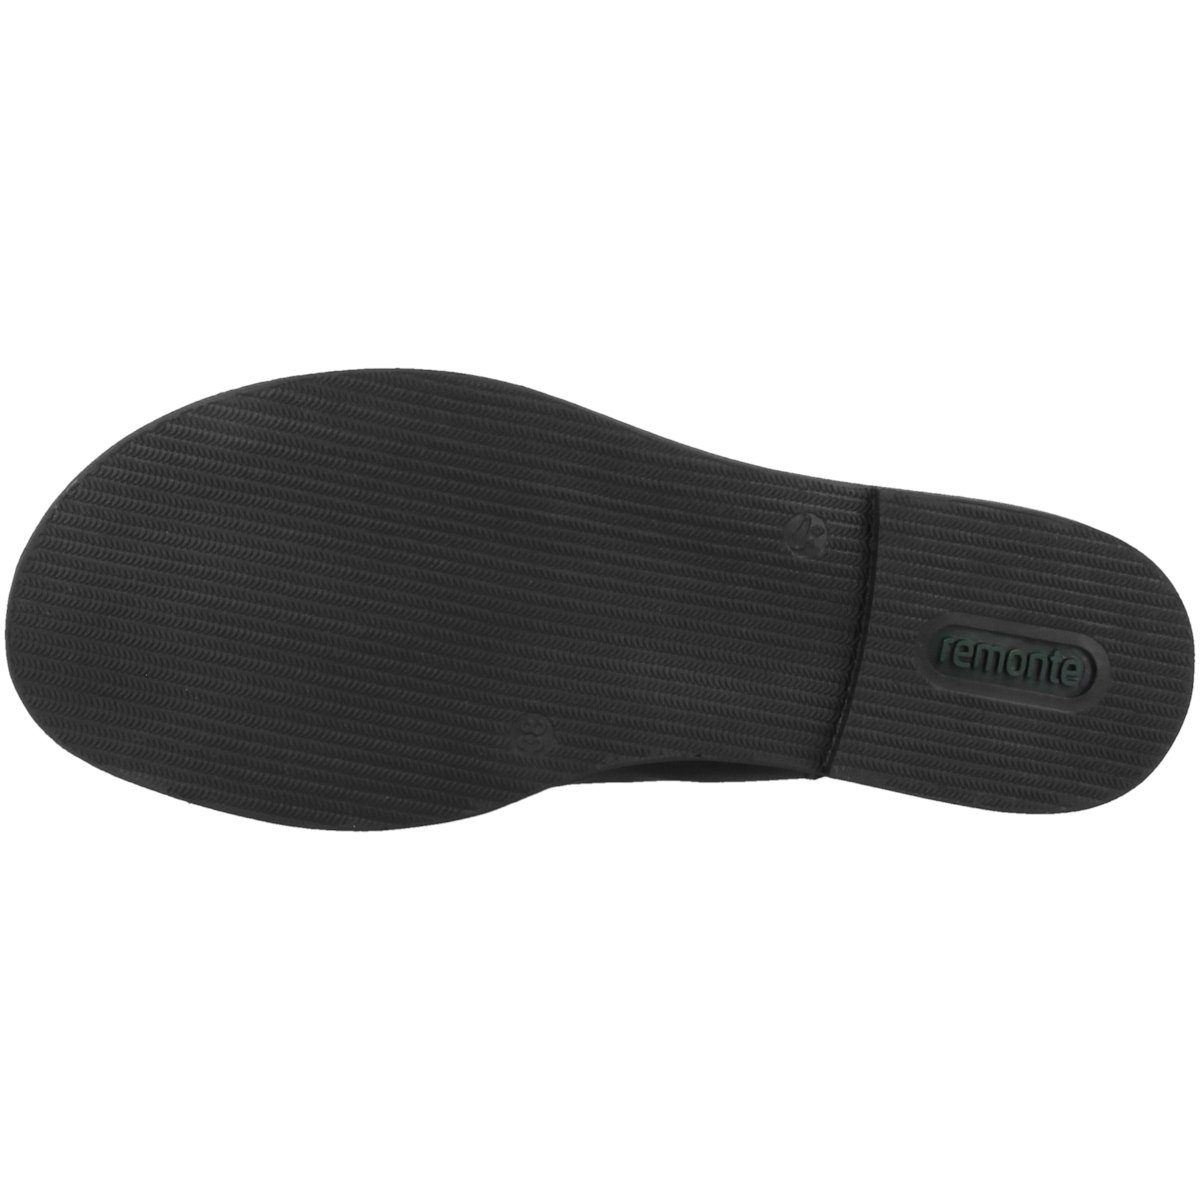 Damen / D3650 Remonte 01 schwarz Sandale